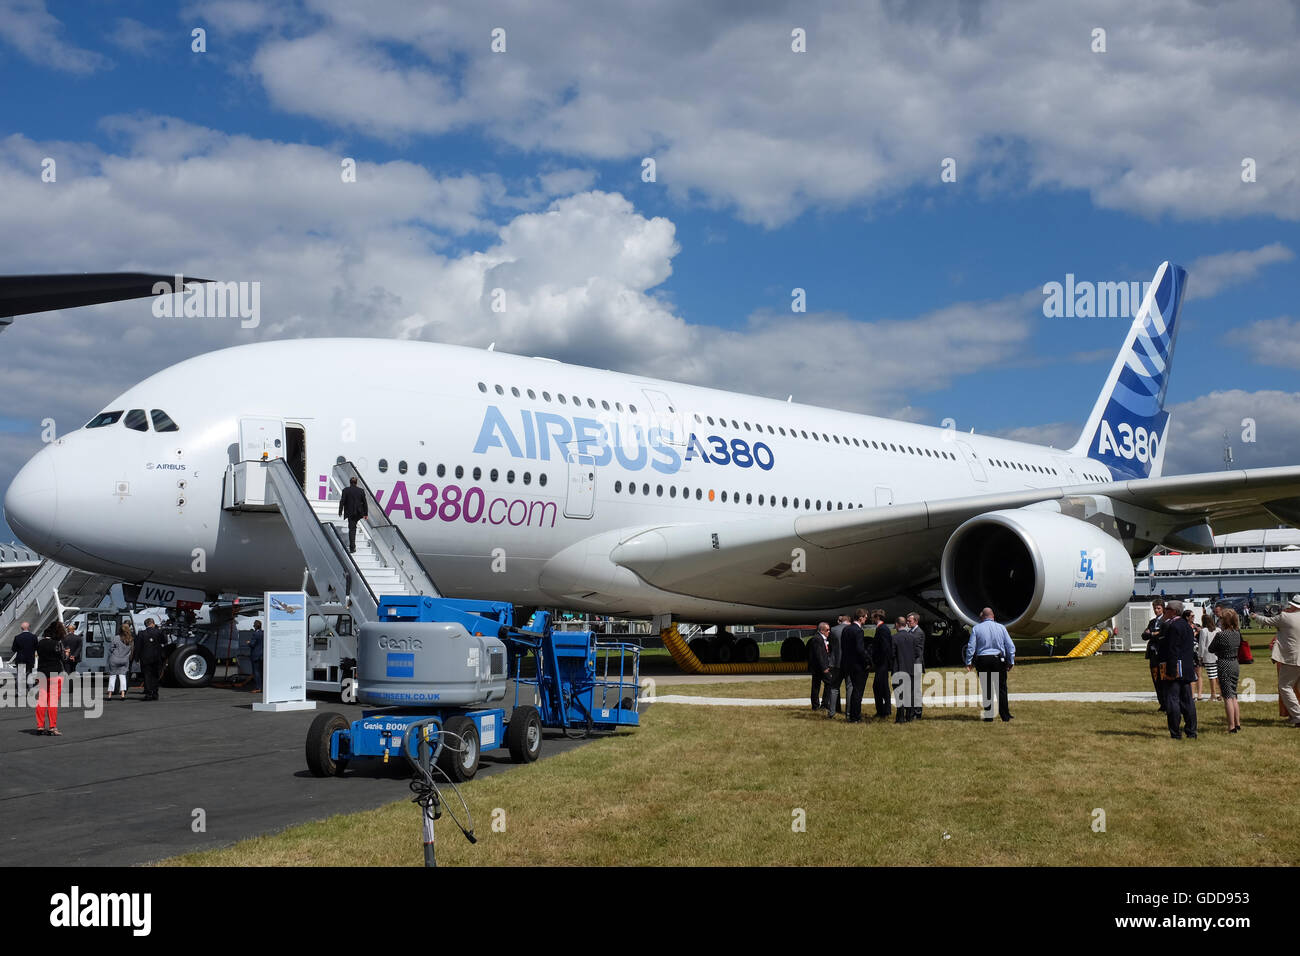 Un Airbus A380 au salon de l'aéronautique de Farnborough, près de Londres, Angleterre, en 2016. Banque D'Images